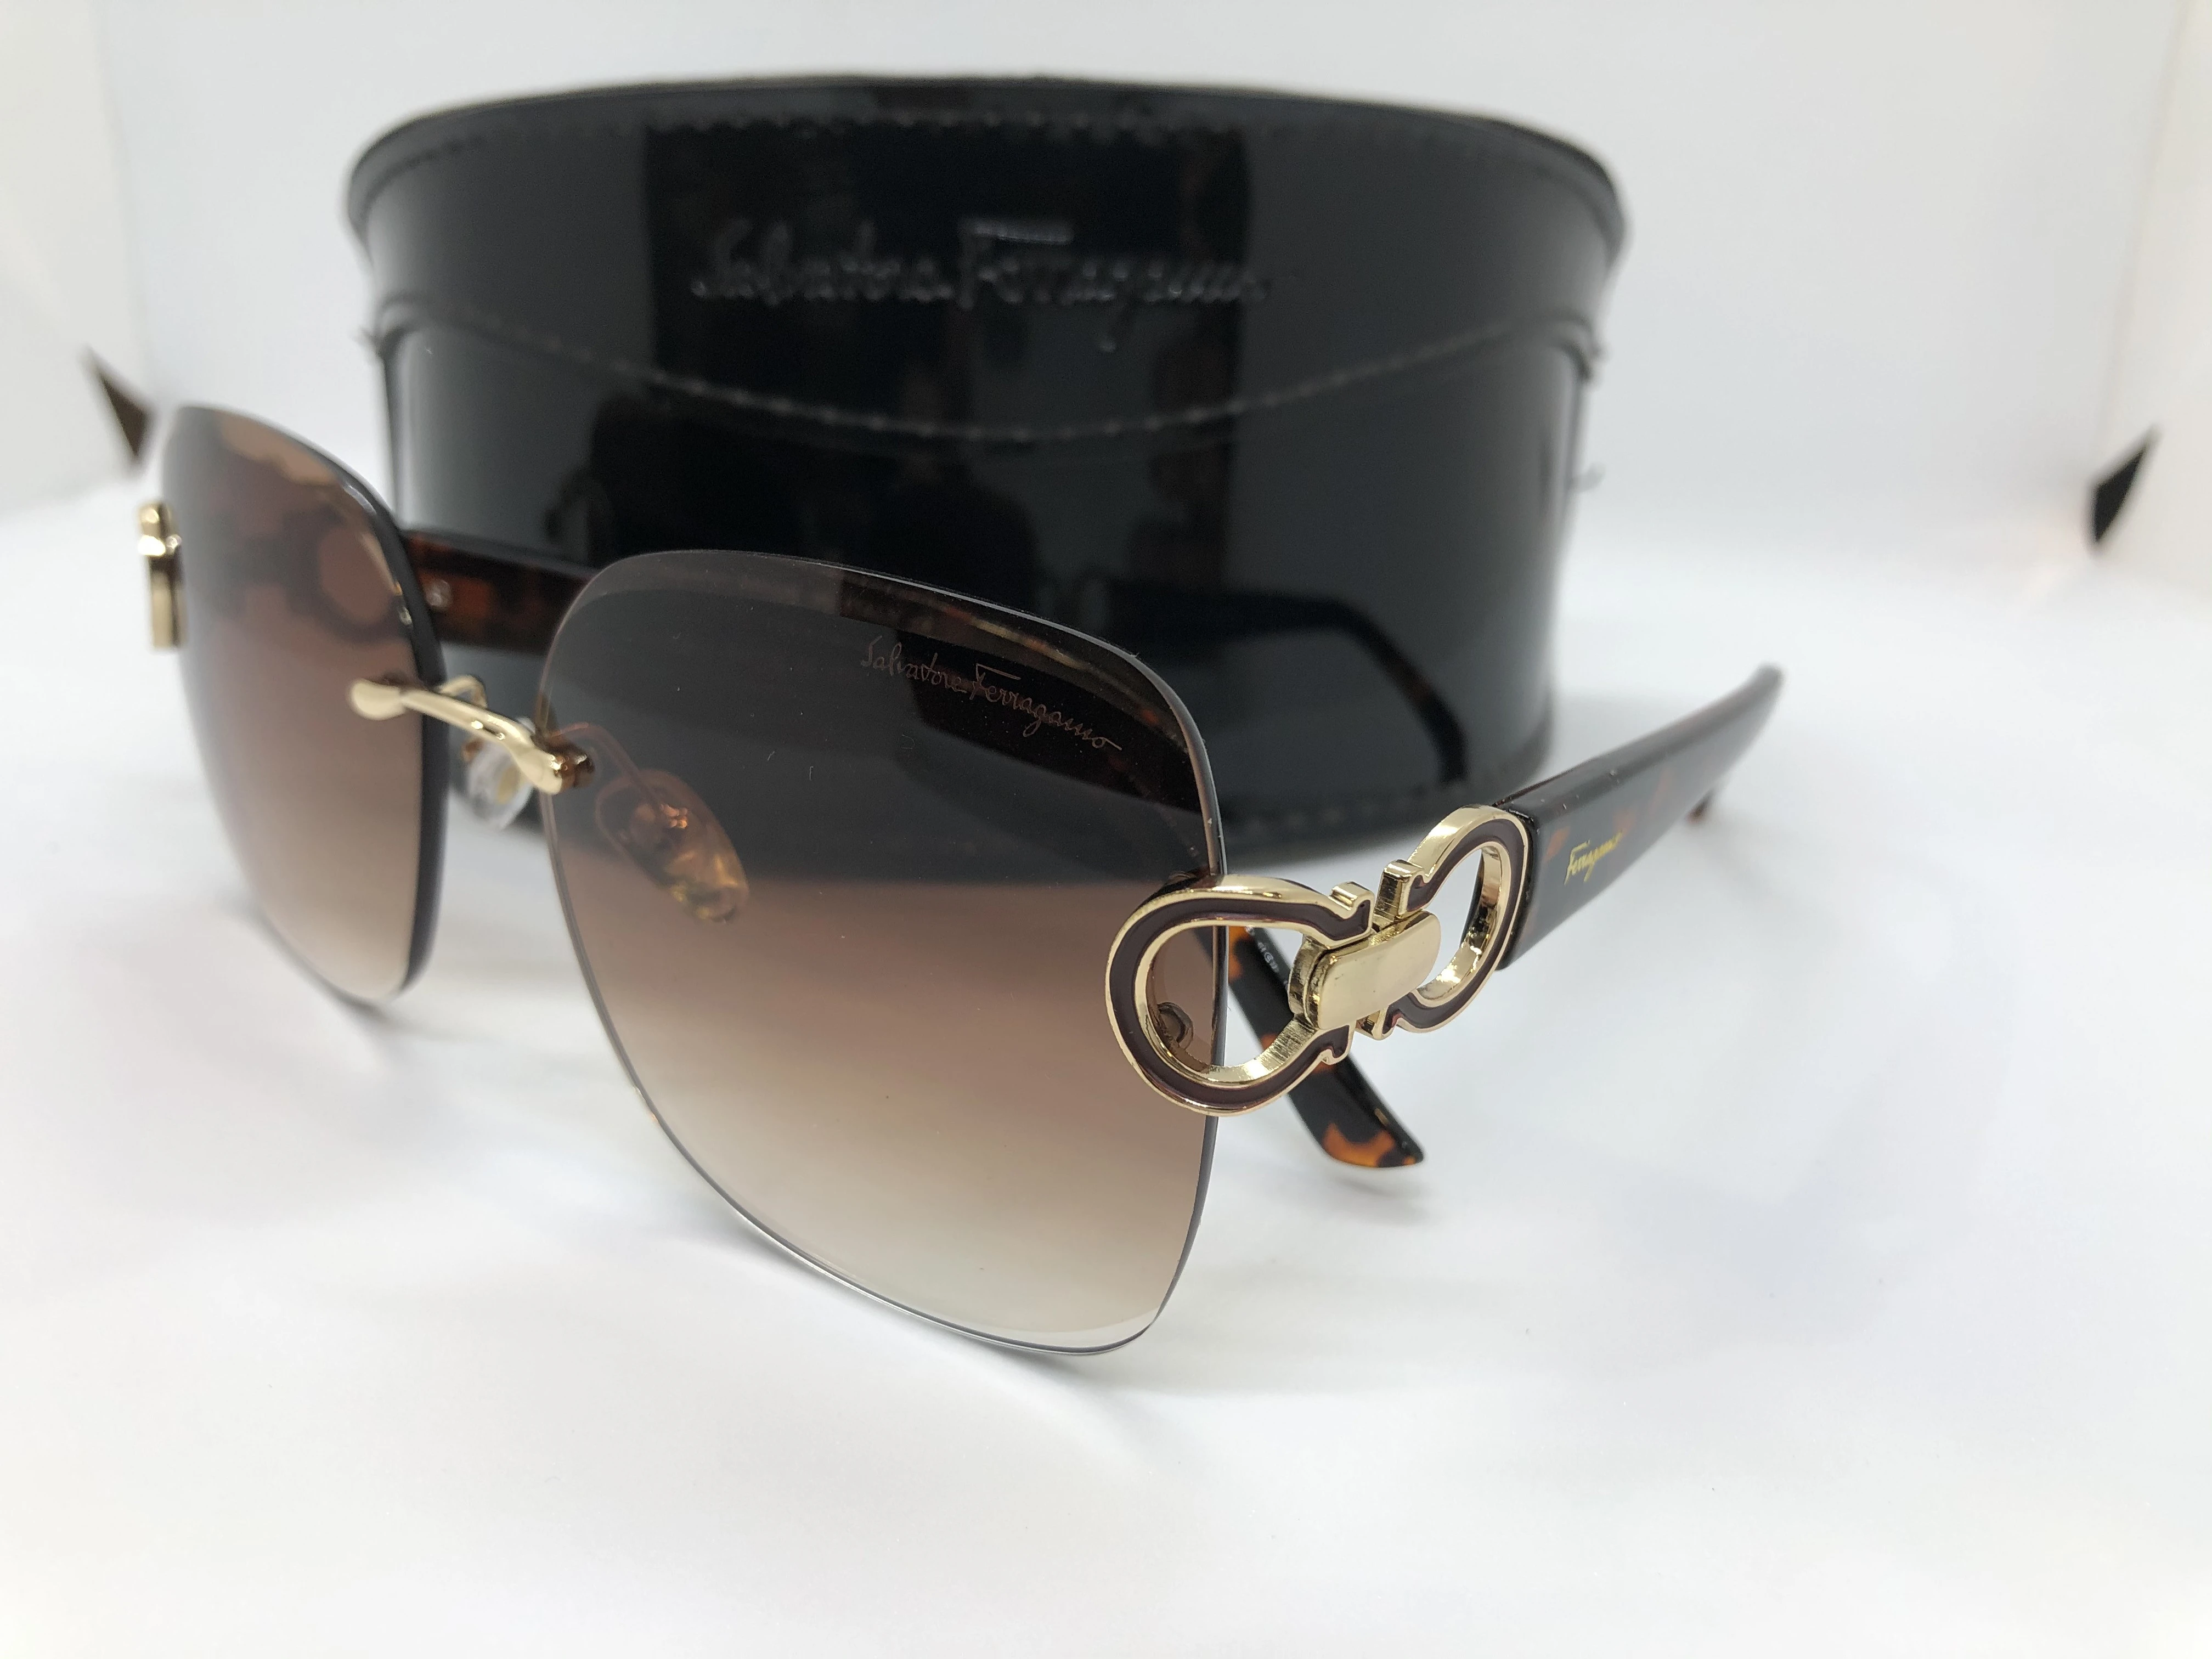 نظارة شمسية - من سلفاتوري فيراغامو -بدون اطار - وعدسات بني فاتح متدرج - وزراع بولي كاربونات بني غامق منقوش - بشعار الماركة ذهبي - حريمي